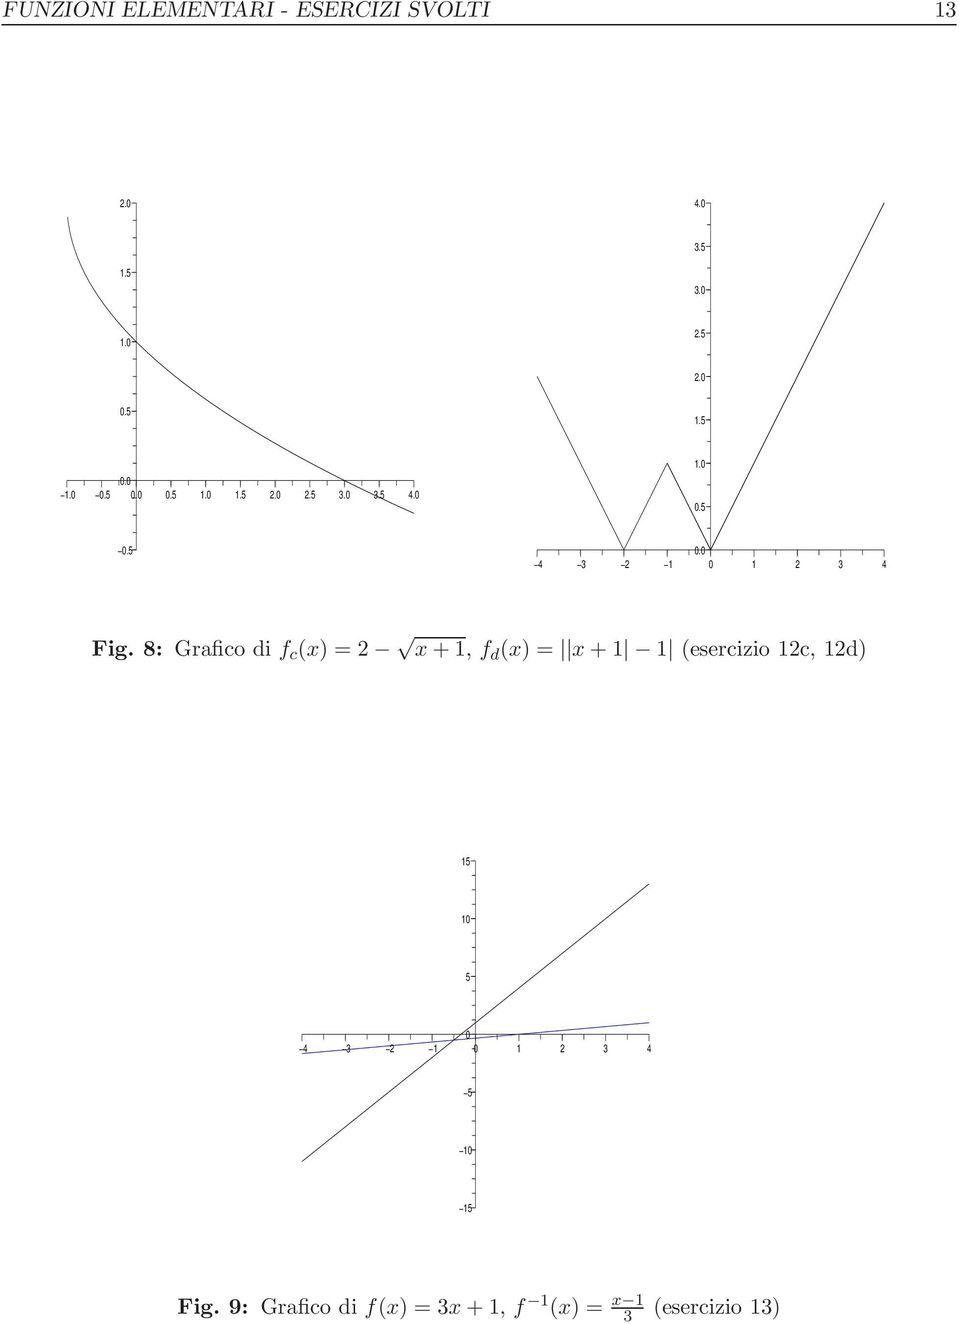 8: Grafico di f c (x) = x + 1, f d (x) = x + 1 1 (esercizio